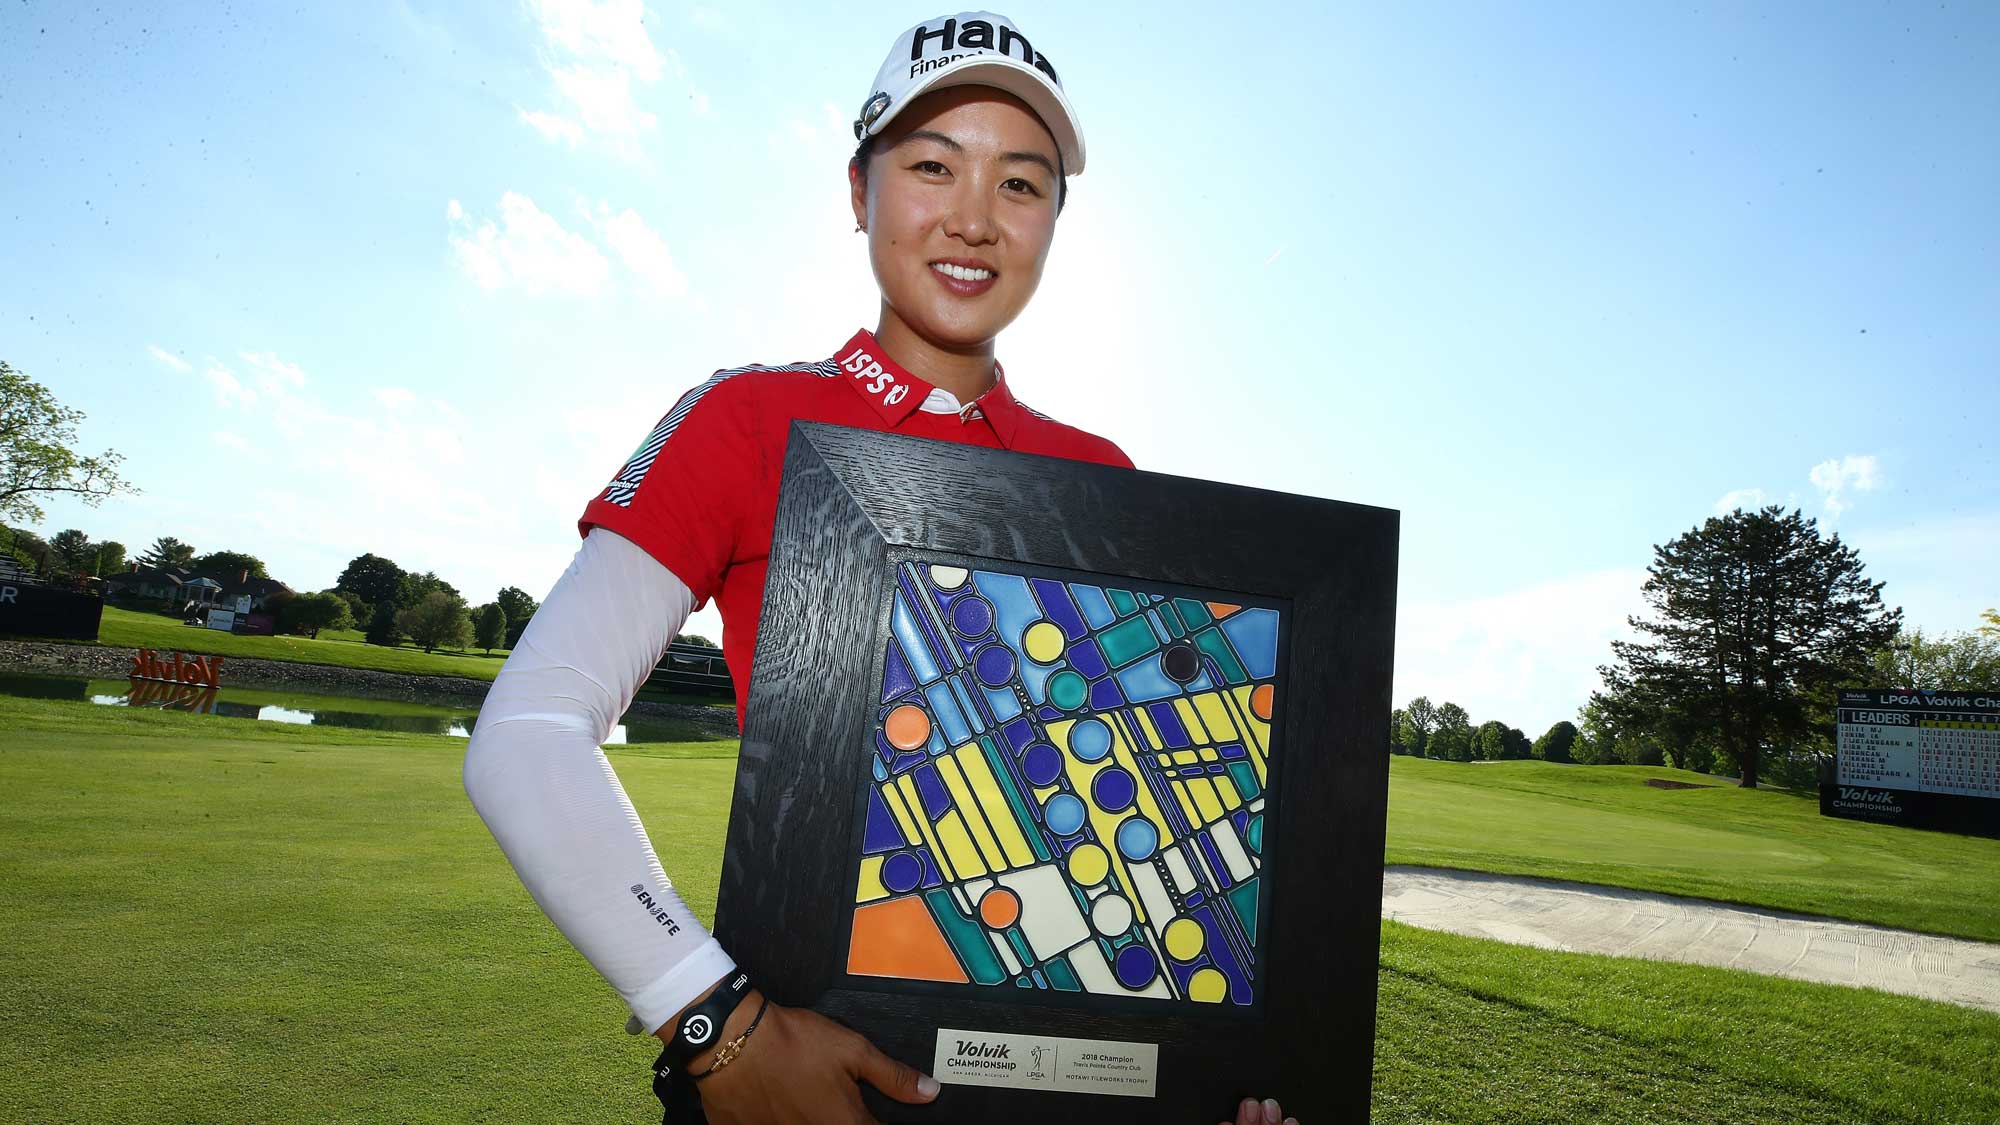 Lee Min-jee giành chức vô địch LPGA Tour lần thứ 4 ngay trong ngày sinh nhật